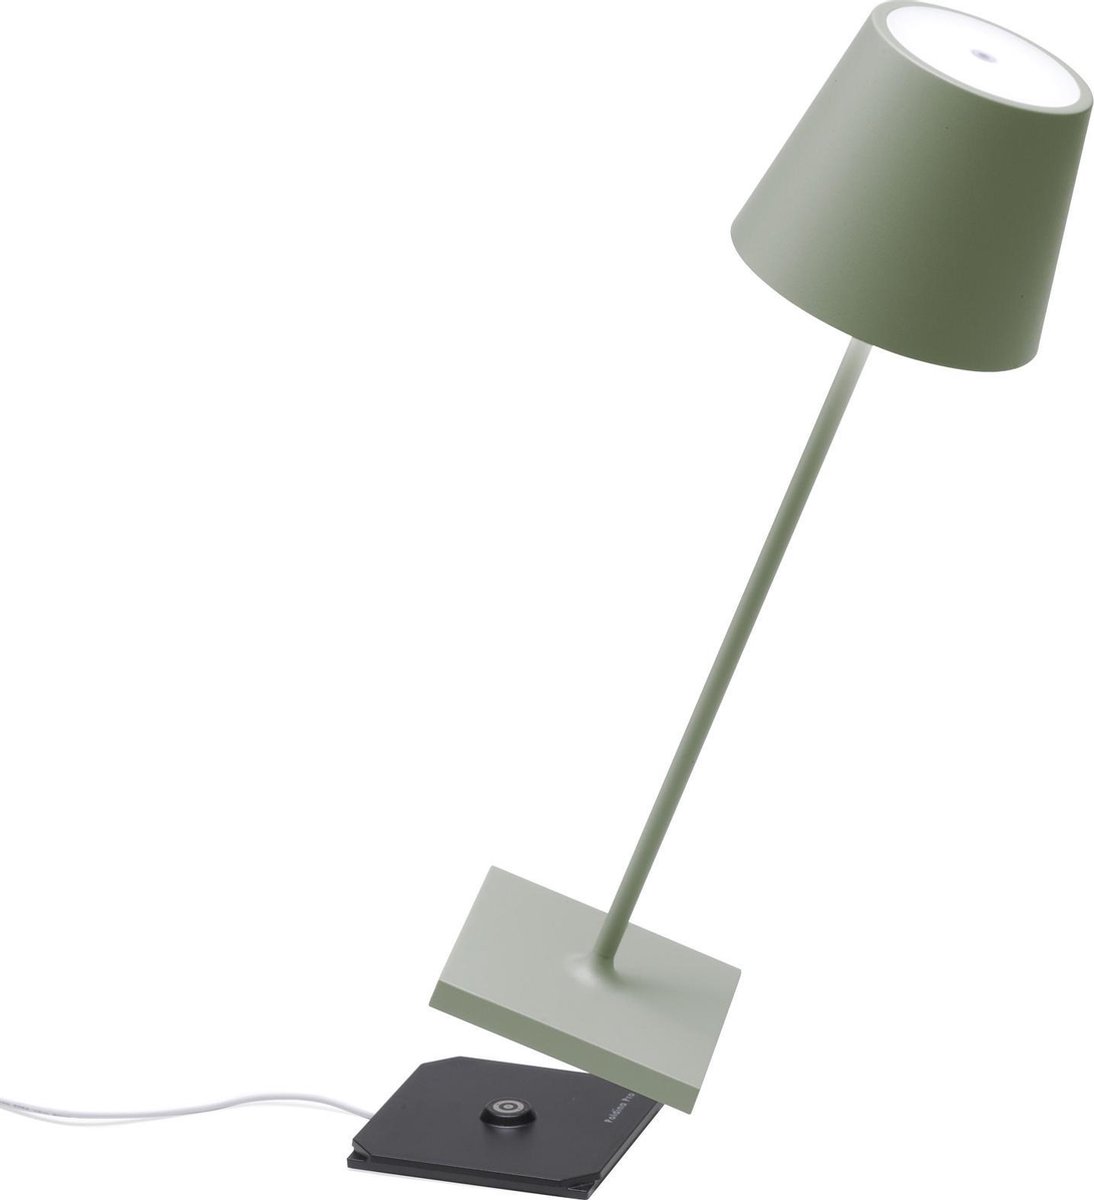 Zafferano - Poldina Pro hoog - Sage Groen - H38 cm - Ledlamp - Terraslamp - Bureaulamp – Tafellamp – Snoerloos – Verplaatsbaar – Duurzaam - Voor binnen en buiten – LED - Dimbaar - 3000K – IP54 Spat Waterdicht - USB oplaadbaar